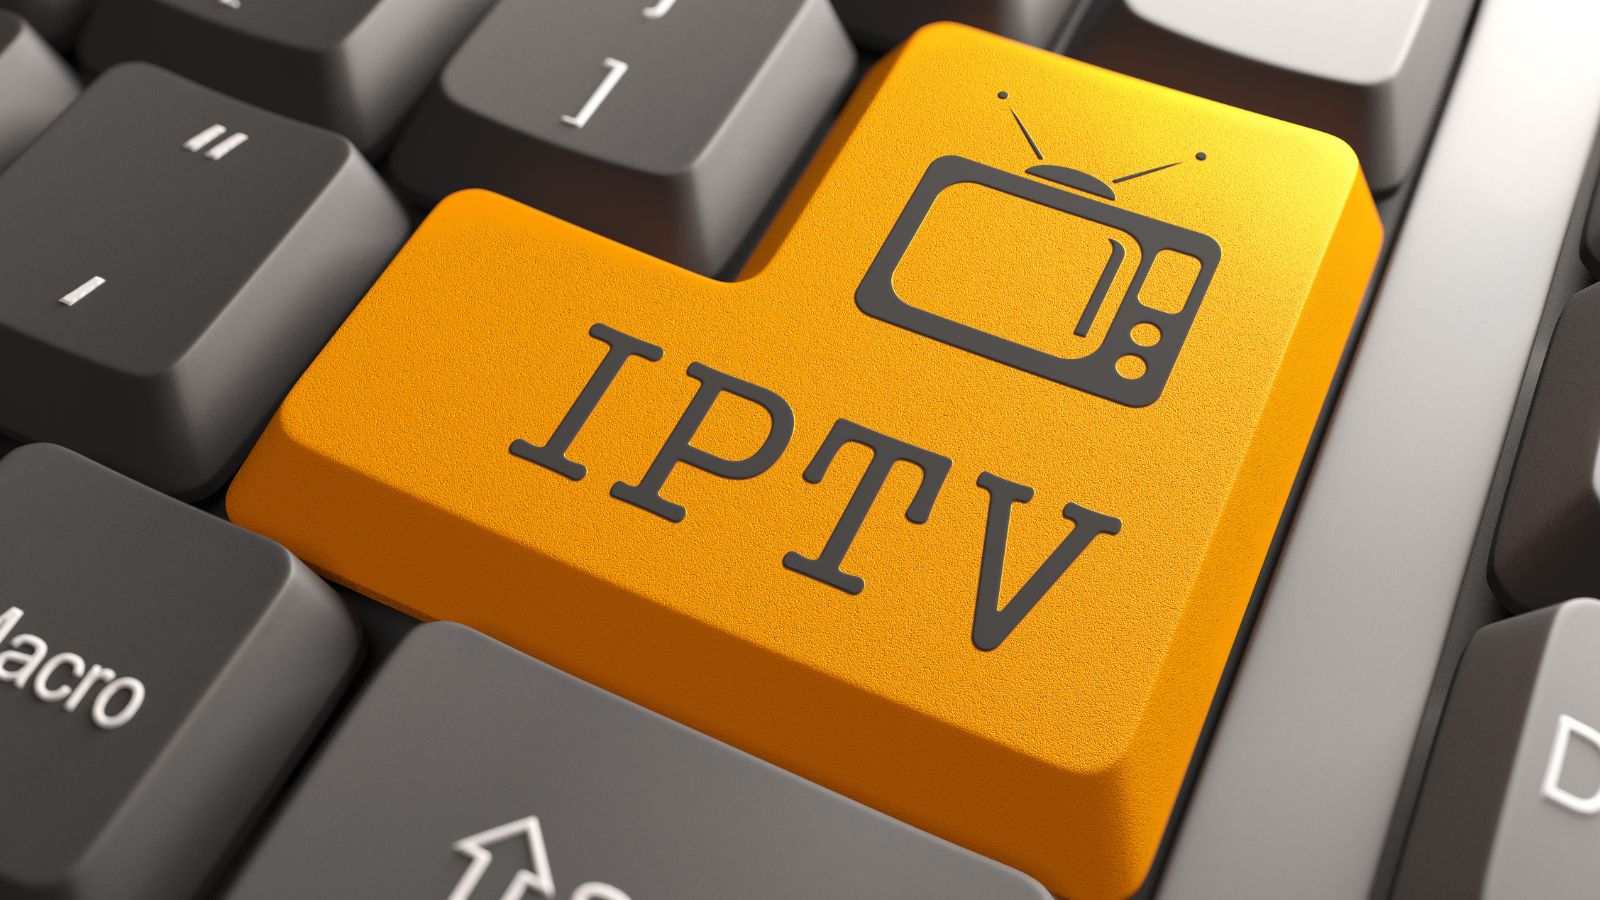 IPTV shock, multa sicura per tutti gli utenti